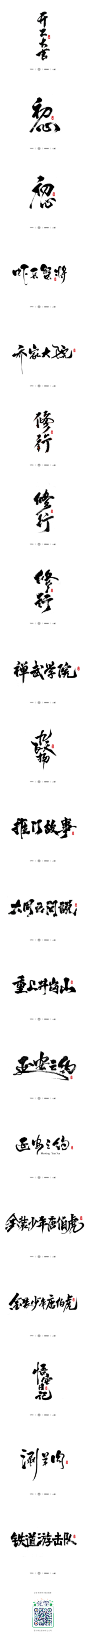 小骚手书-部分商业案例整理-字体传奇网-中国首个字体品牌设计师交流网